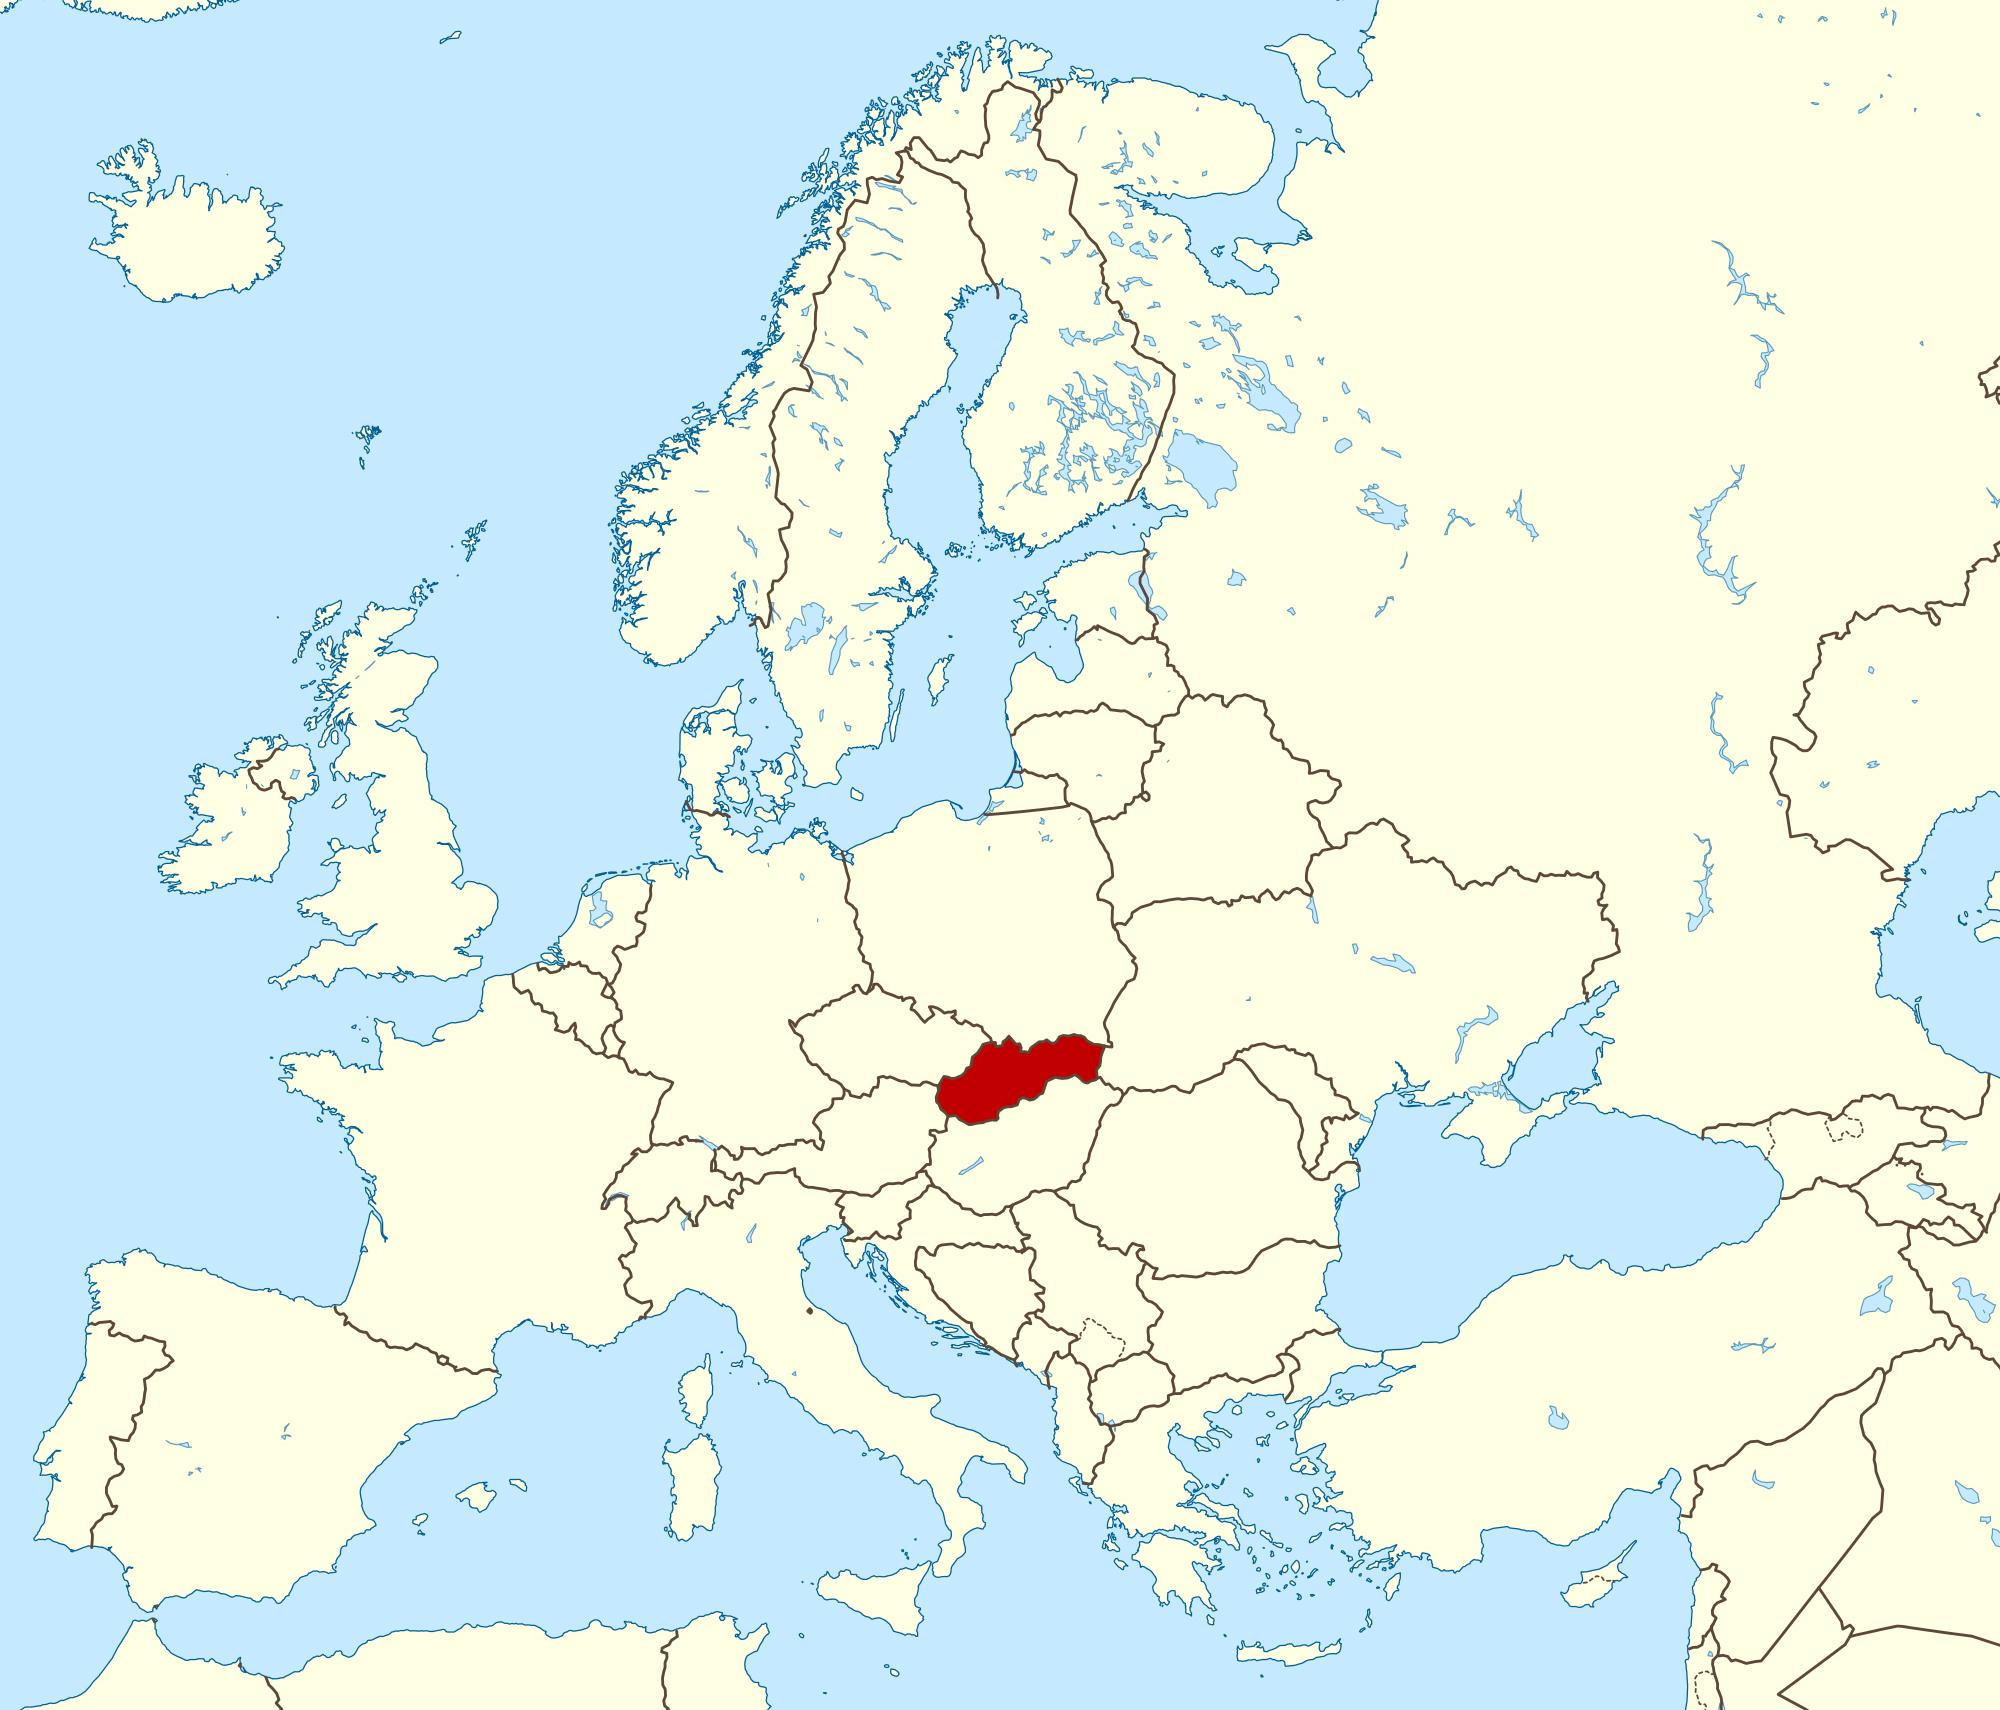 Словакия карта Европы - карта Словакии карта Европы (Восточная Европа -Европа)